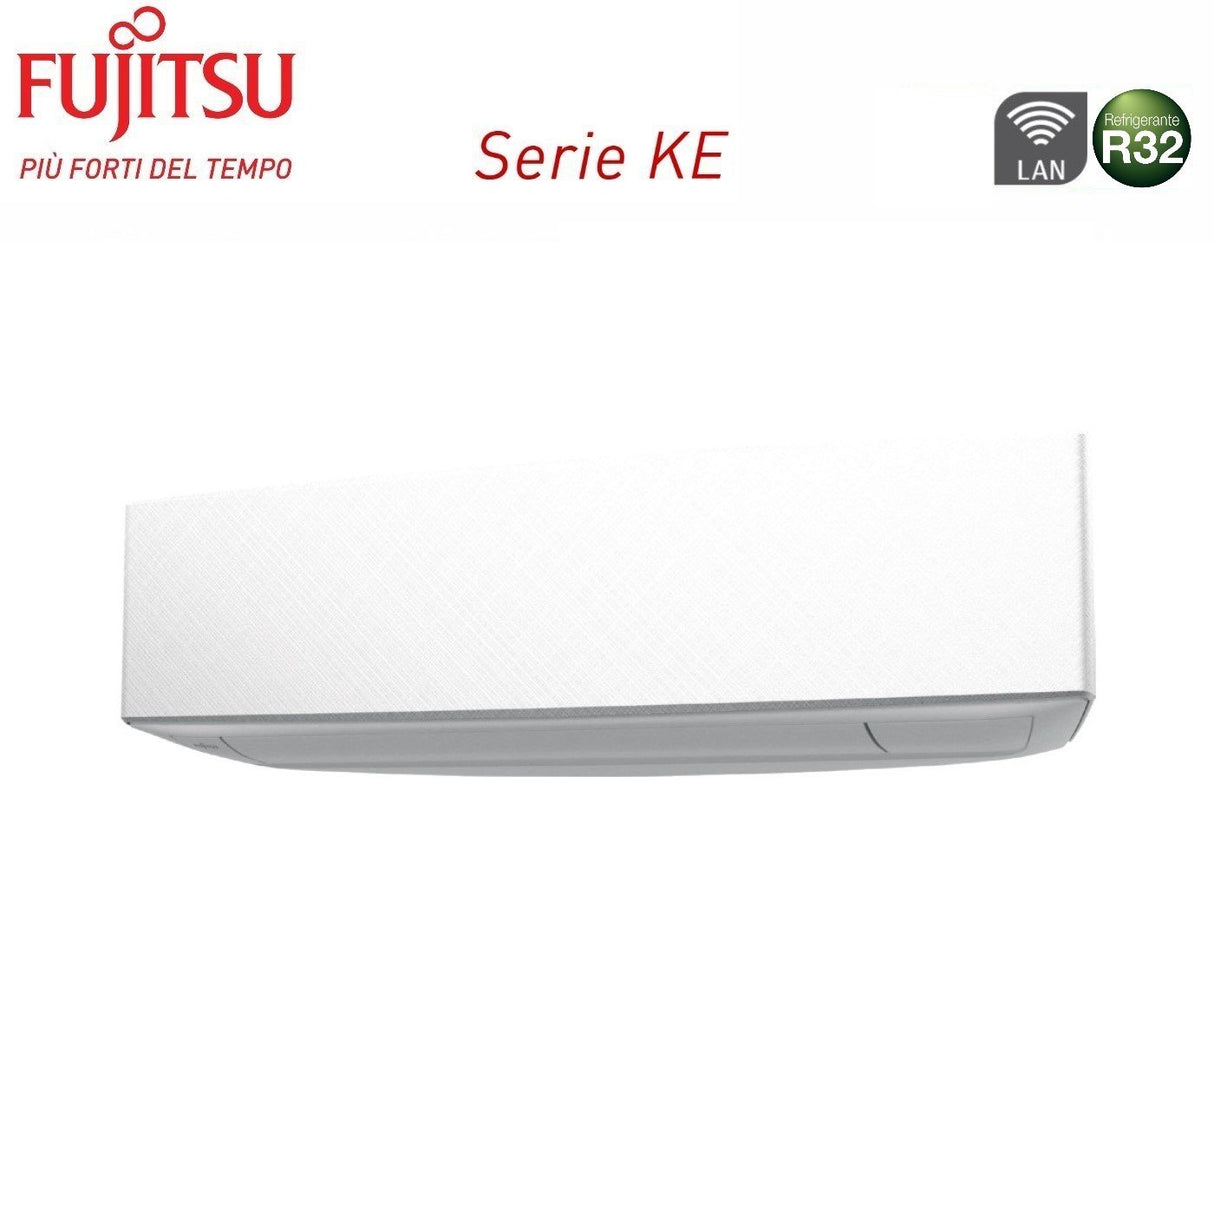 immagine-3-fujitsu-climatizzatore-condizionatore-fujitsu-dual-split-inverter-serie-ke-white-99-con-aoyg14kbta2-r-32-wi-fi-integrato-90009000-colore-bianco